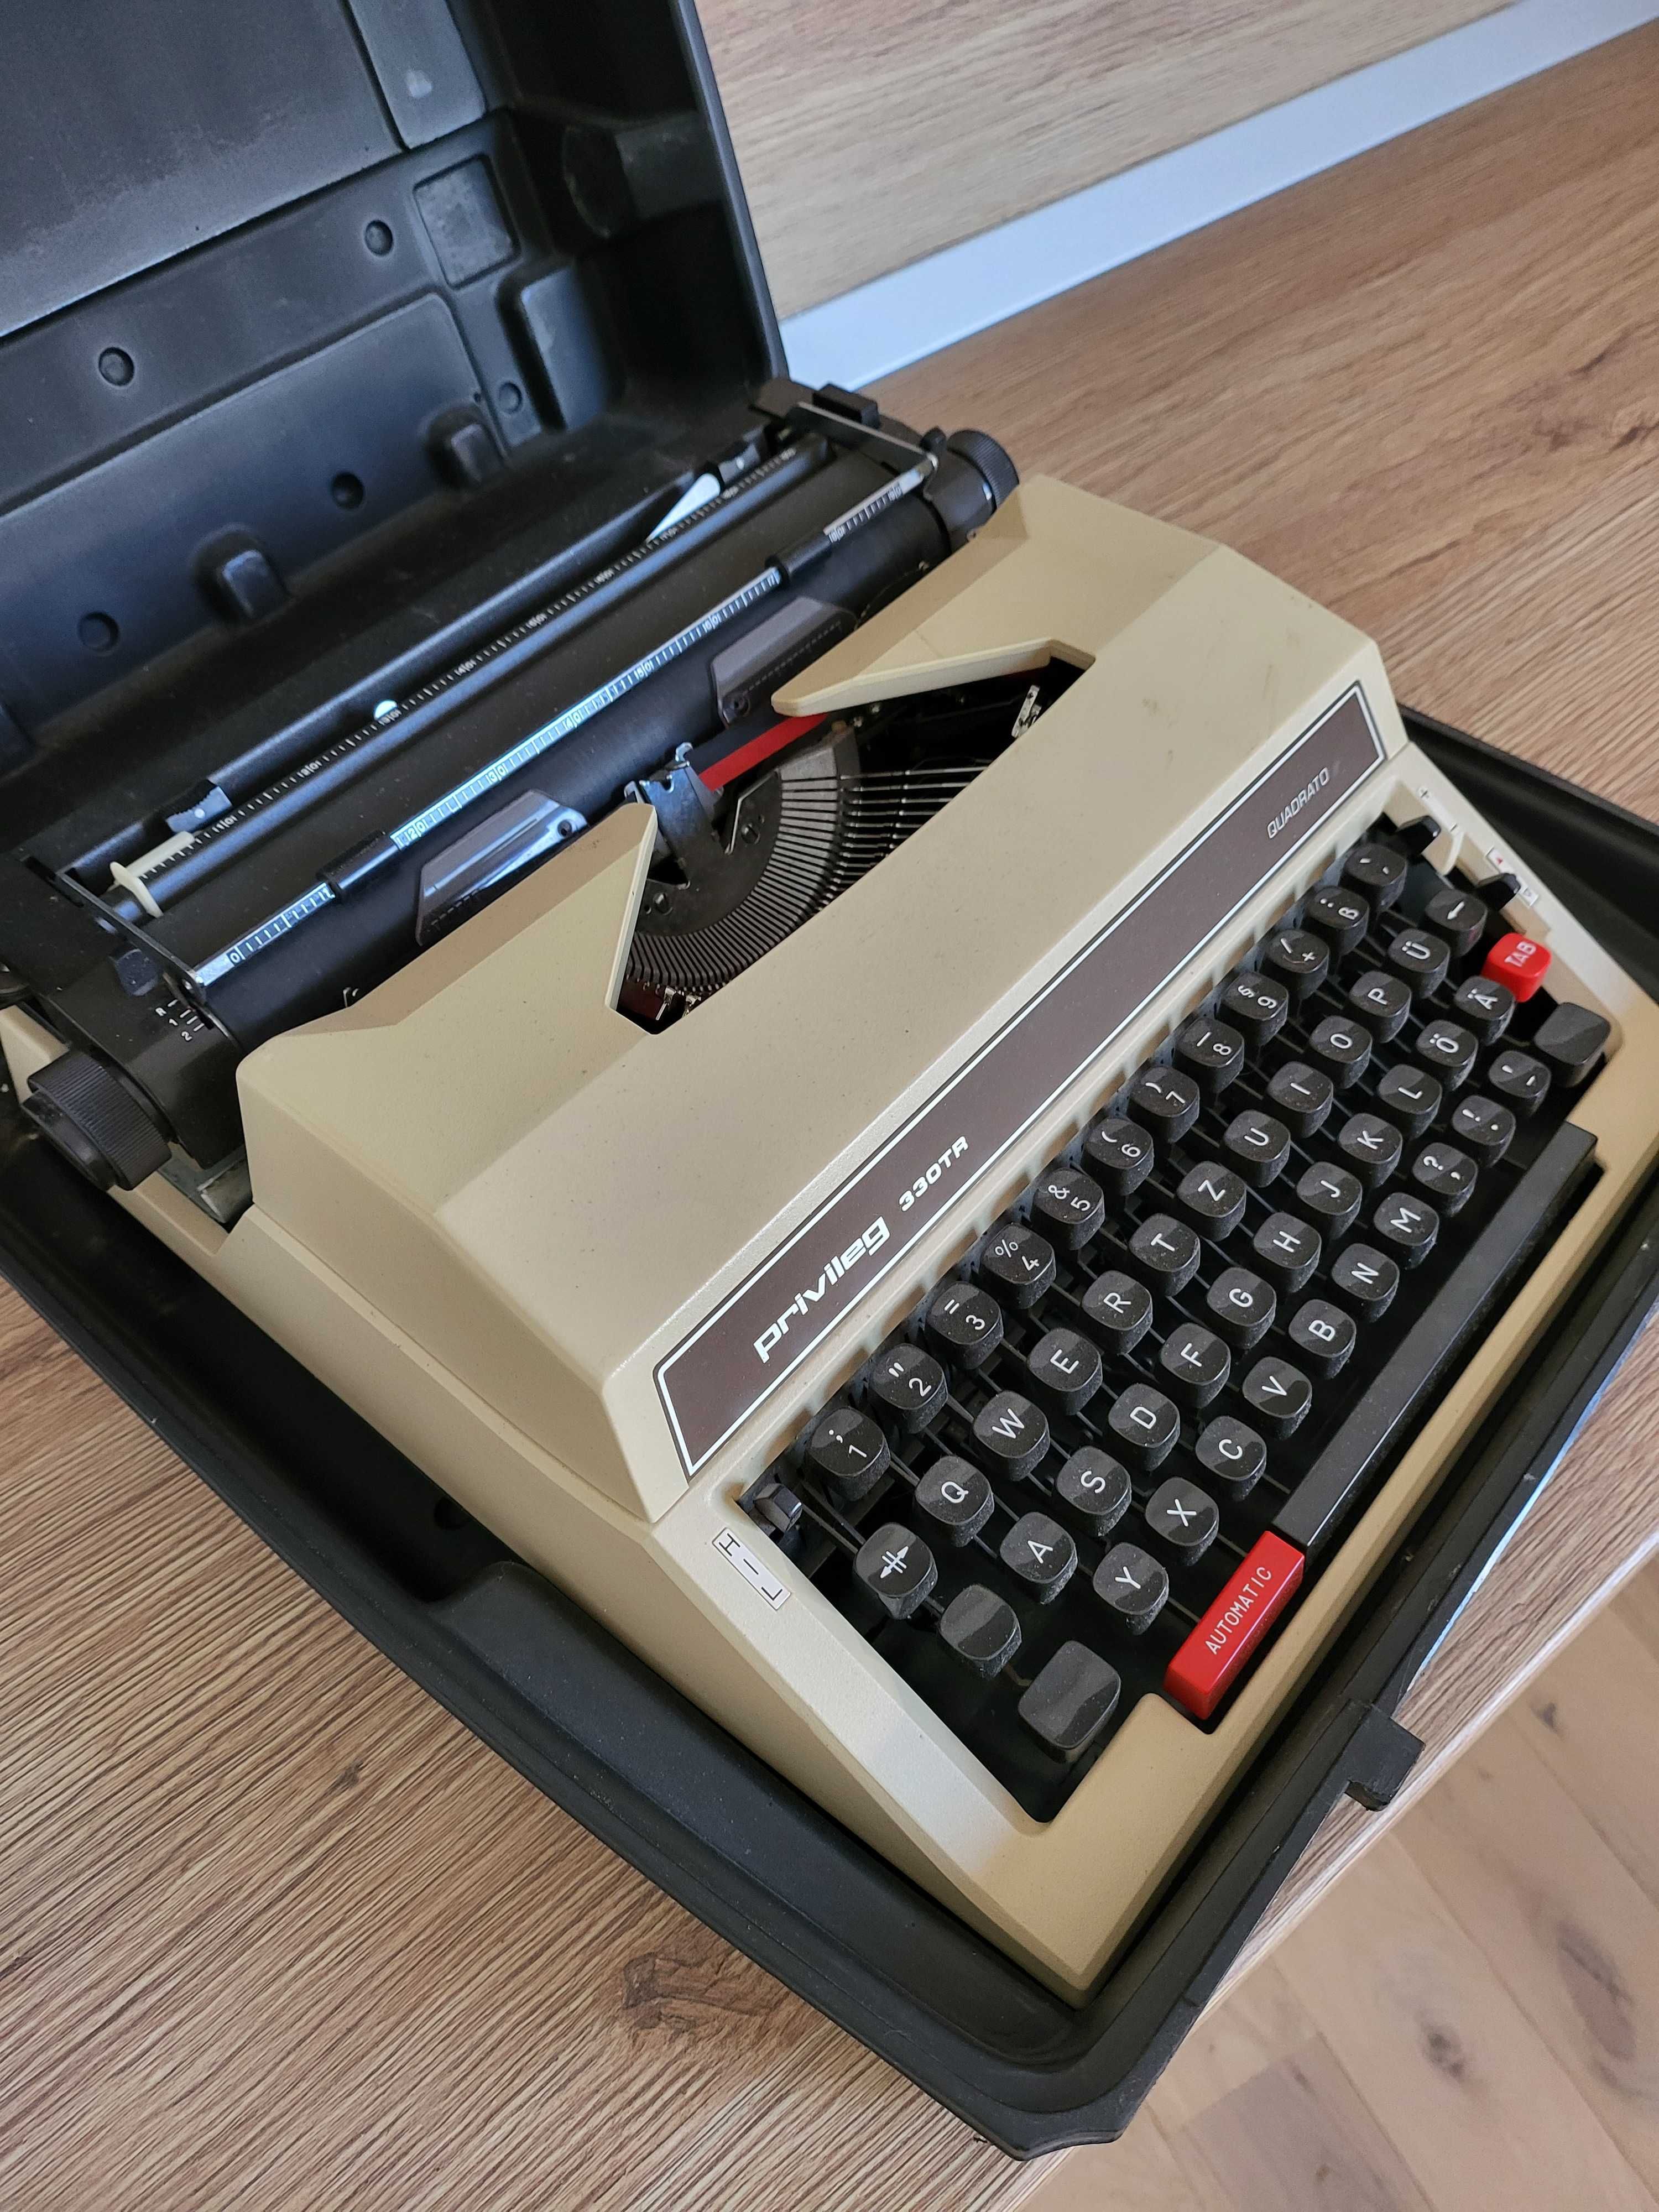 Masina de scris vintage